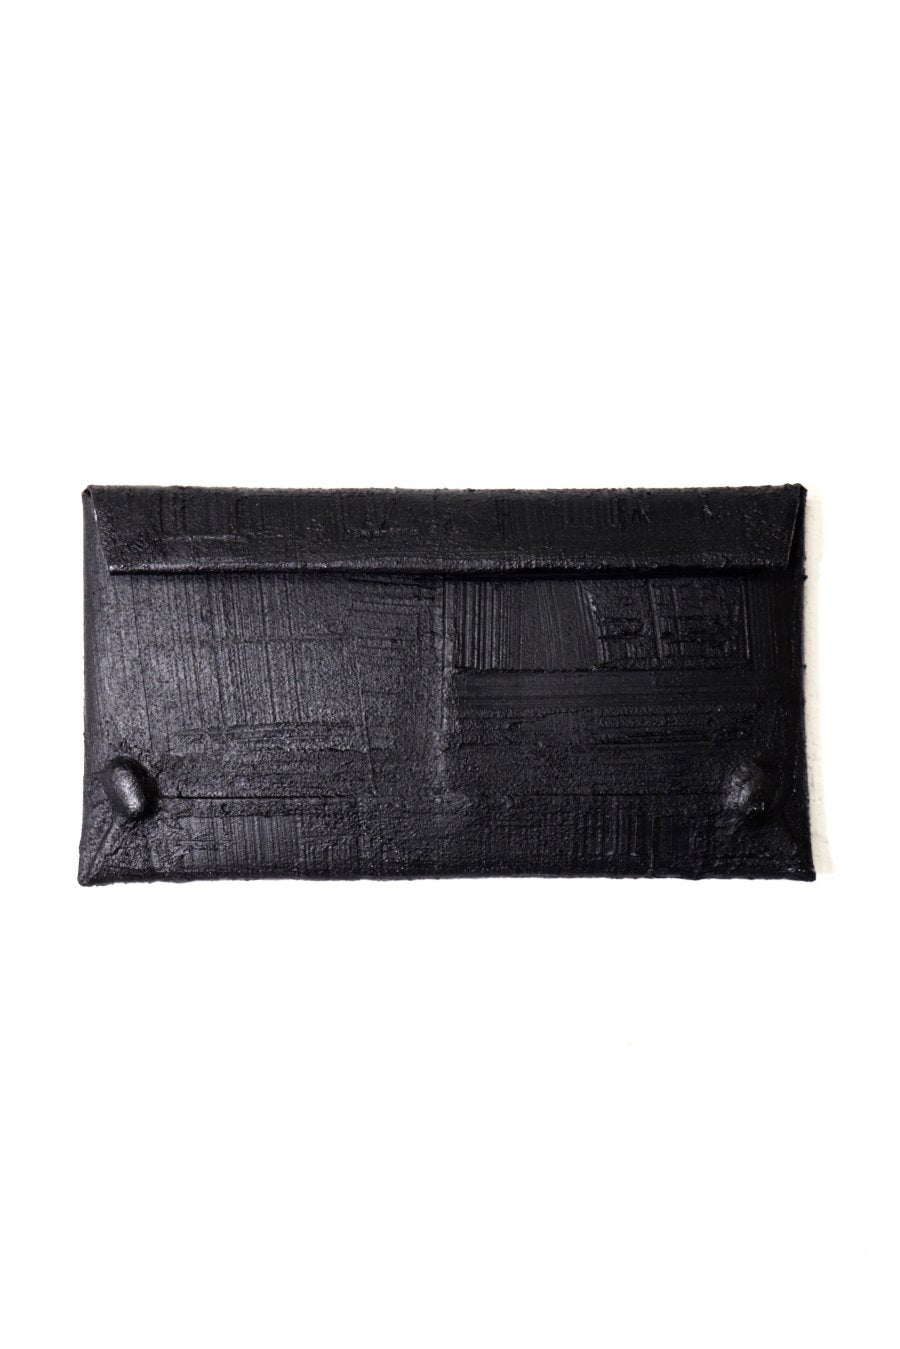 カガリユウスケ(KAGARI YUSUKE)の黒壁の封筒型長財布の通販｜PALETTE ...